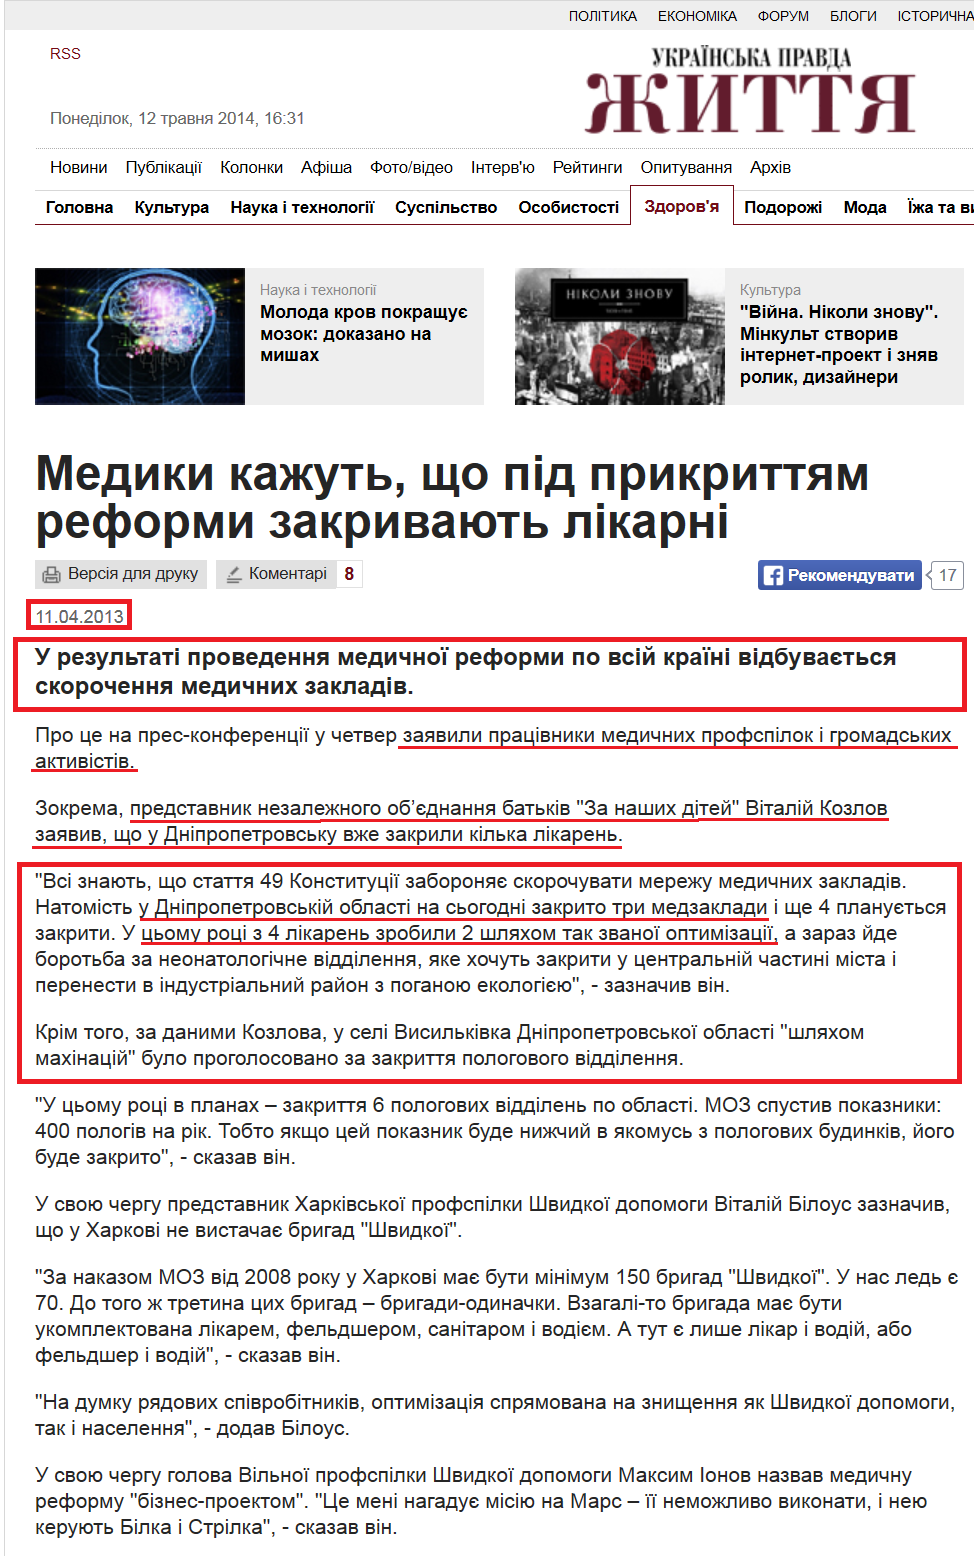 http://life.pravda.com.ua/health/2013/04/11/126345/